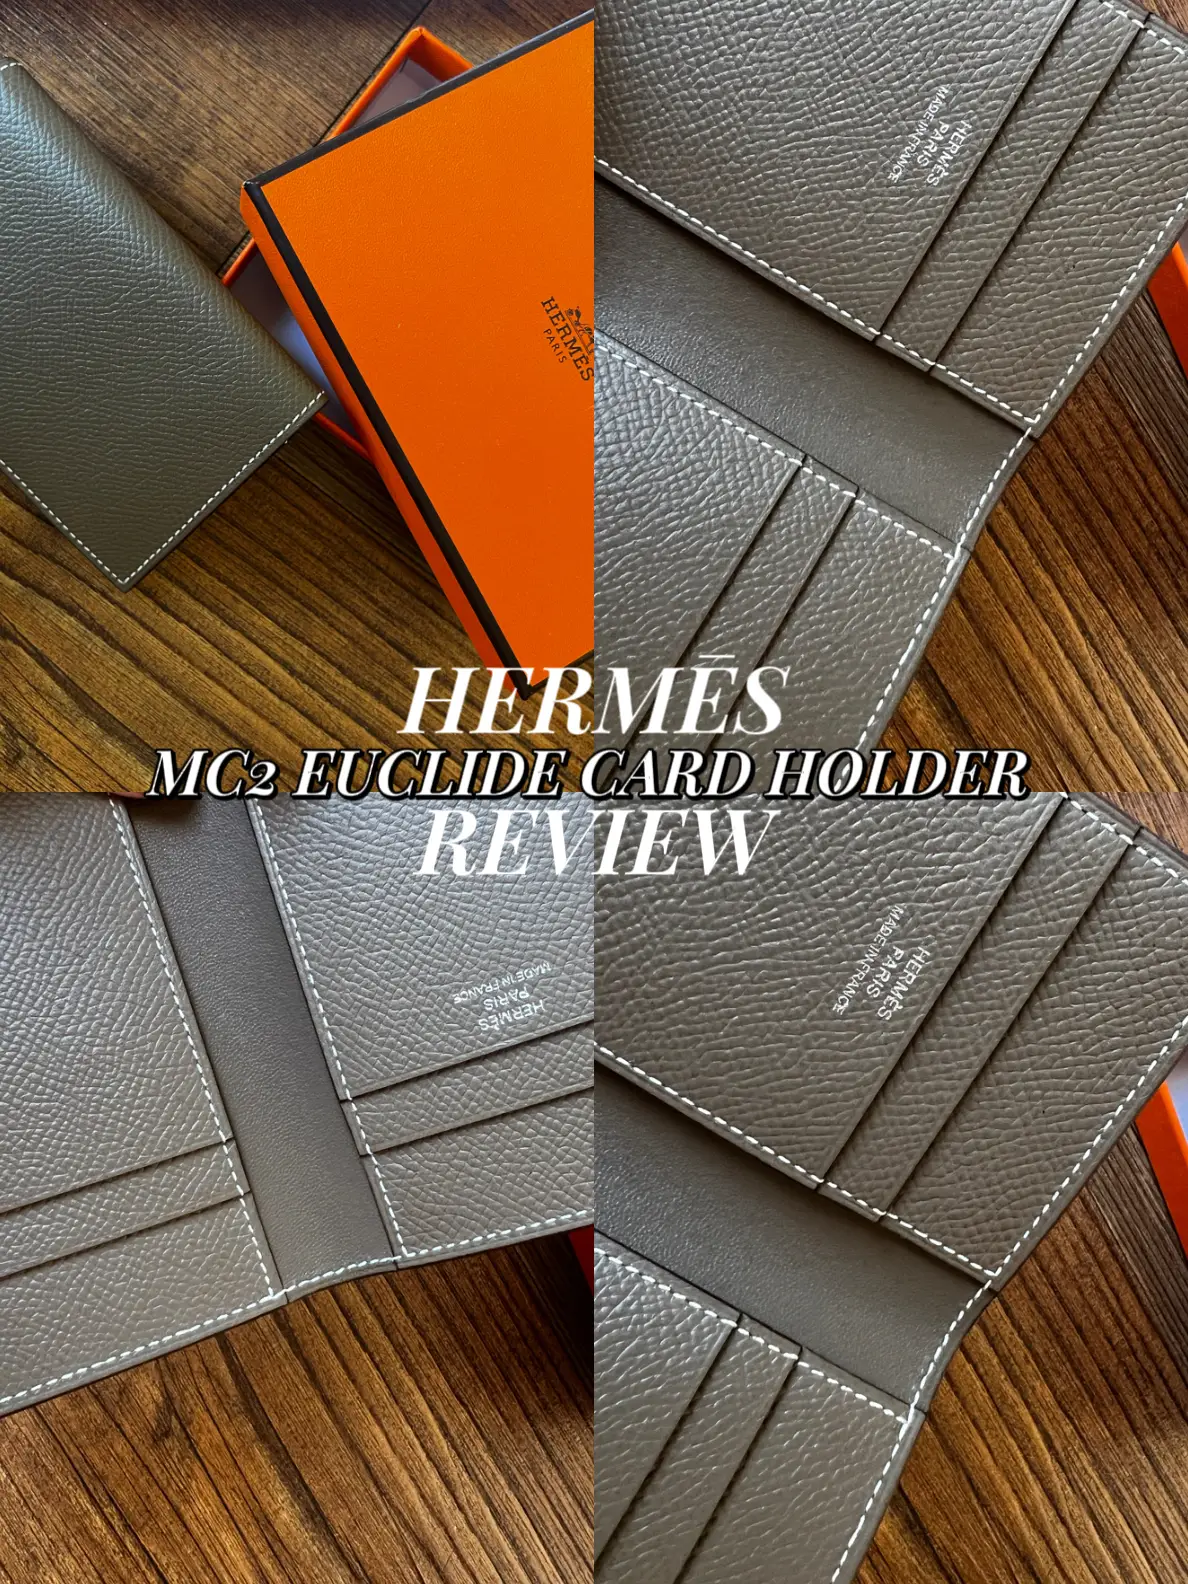 Hermès MC2 Euclide Cardholder Review 